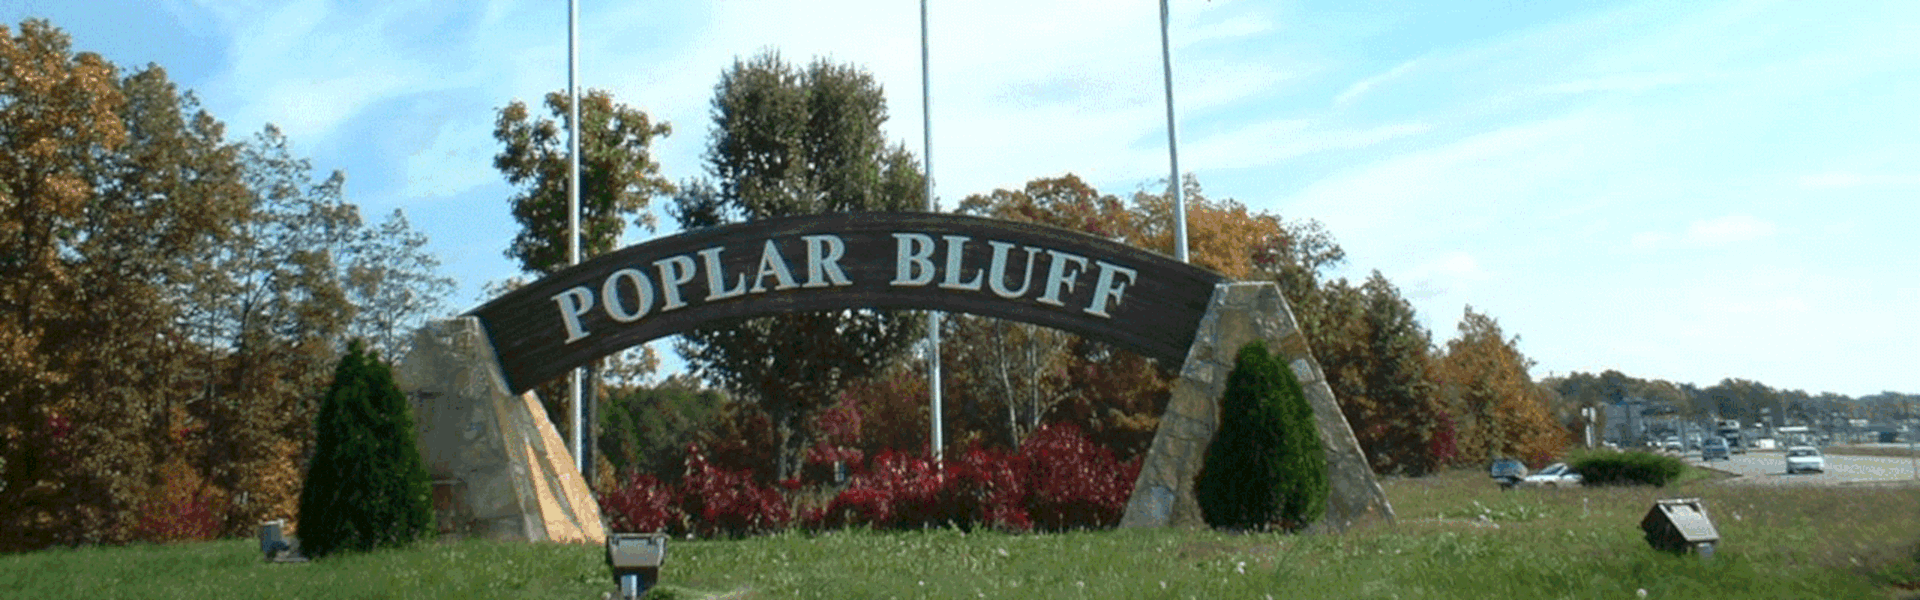 Poplar Bluff, Missouri photo